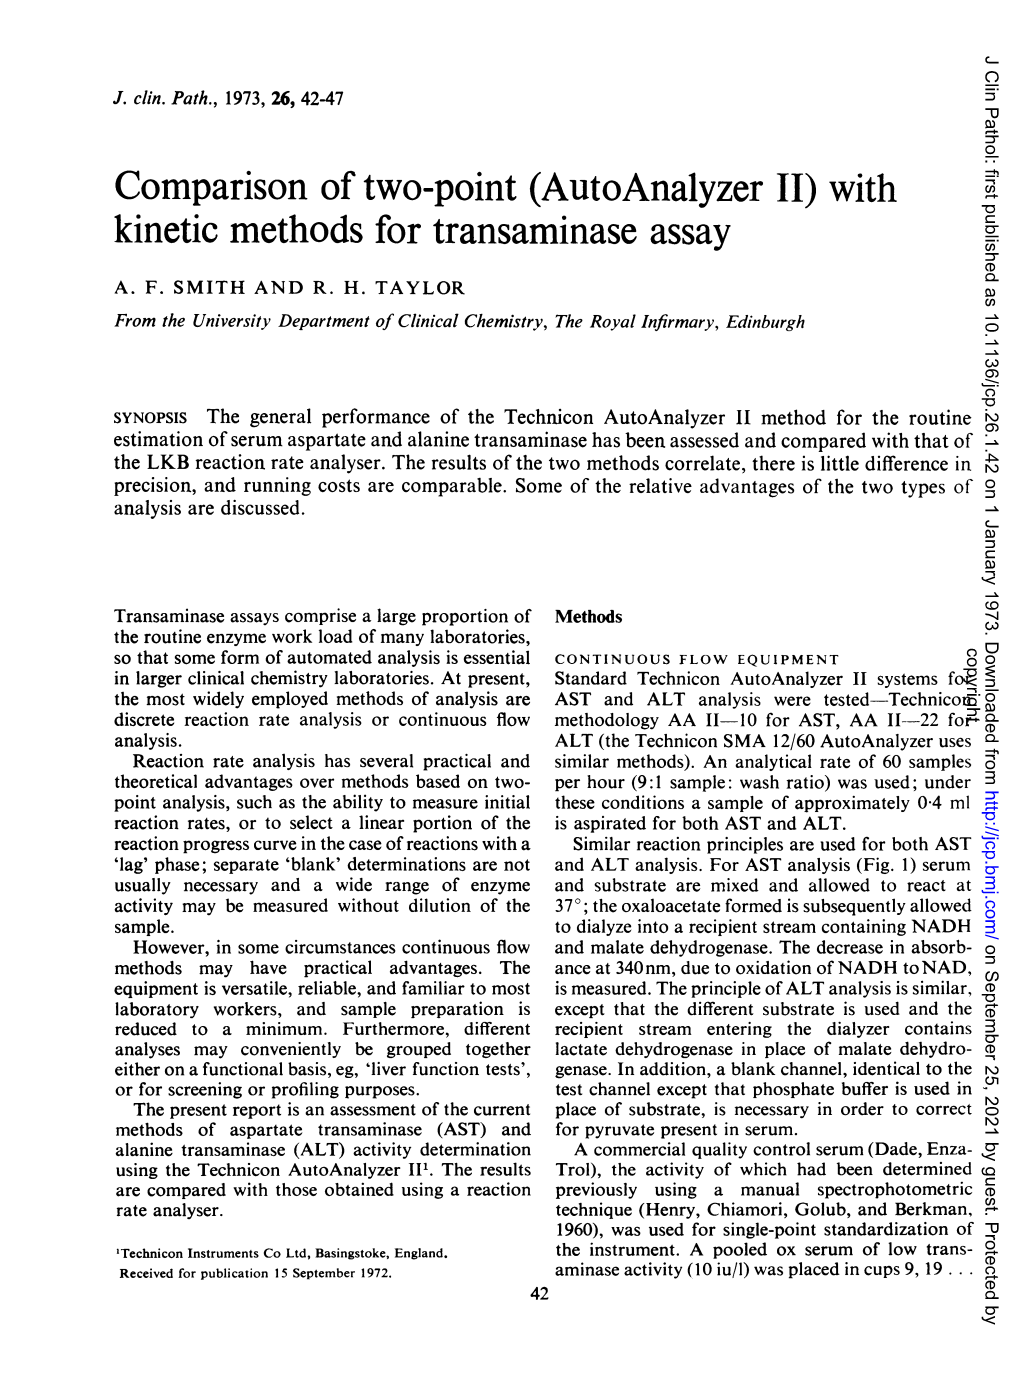 Kinetic Methods for Transaminase Assay